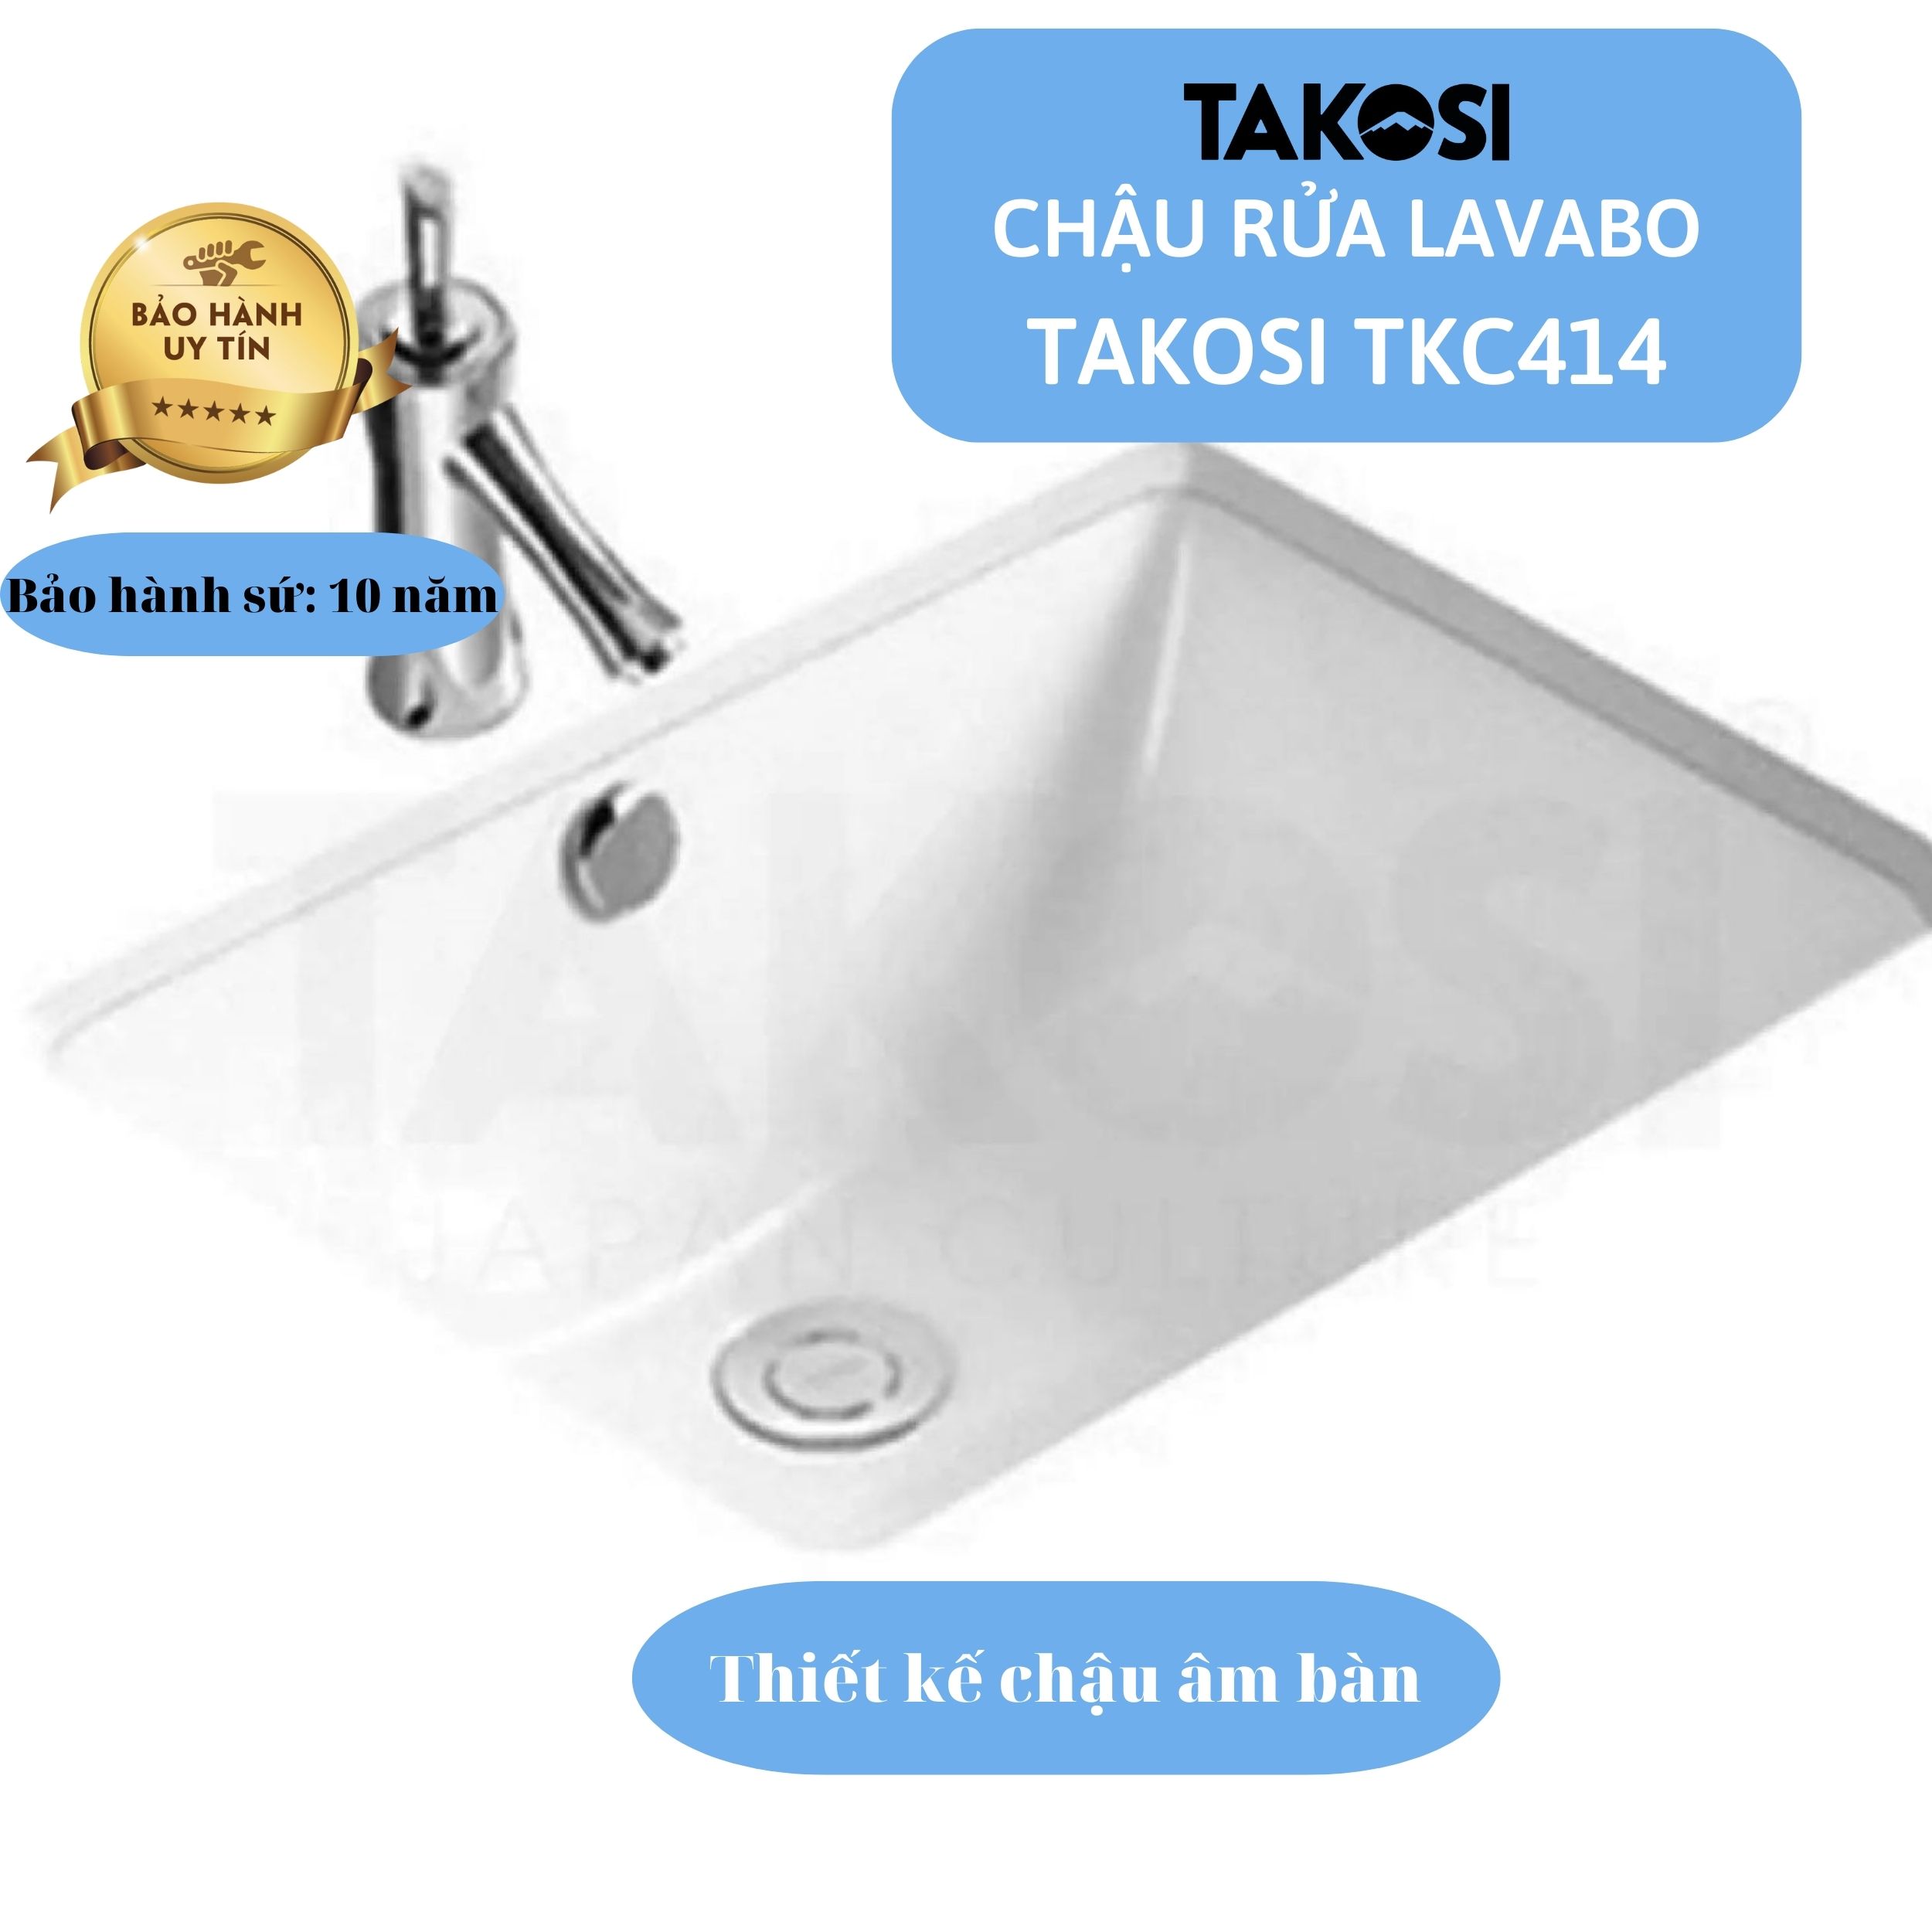 Chậu Lavabo sứ, Chậu rửa mặt phòng tắm Takosi TKC414 Chữ Nhật Âm Bàn Dùng Gia Đình, Khách Sạn - Hàng Chính Hãng Bảo Hành 10 năm